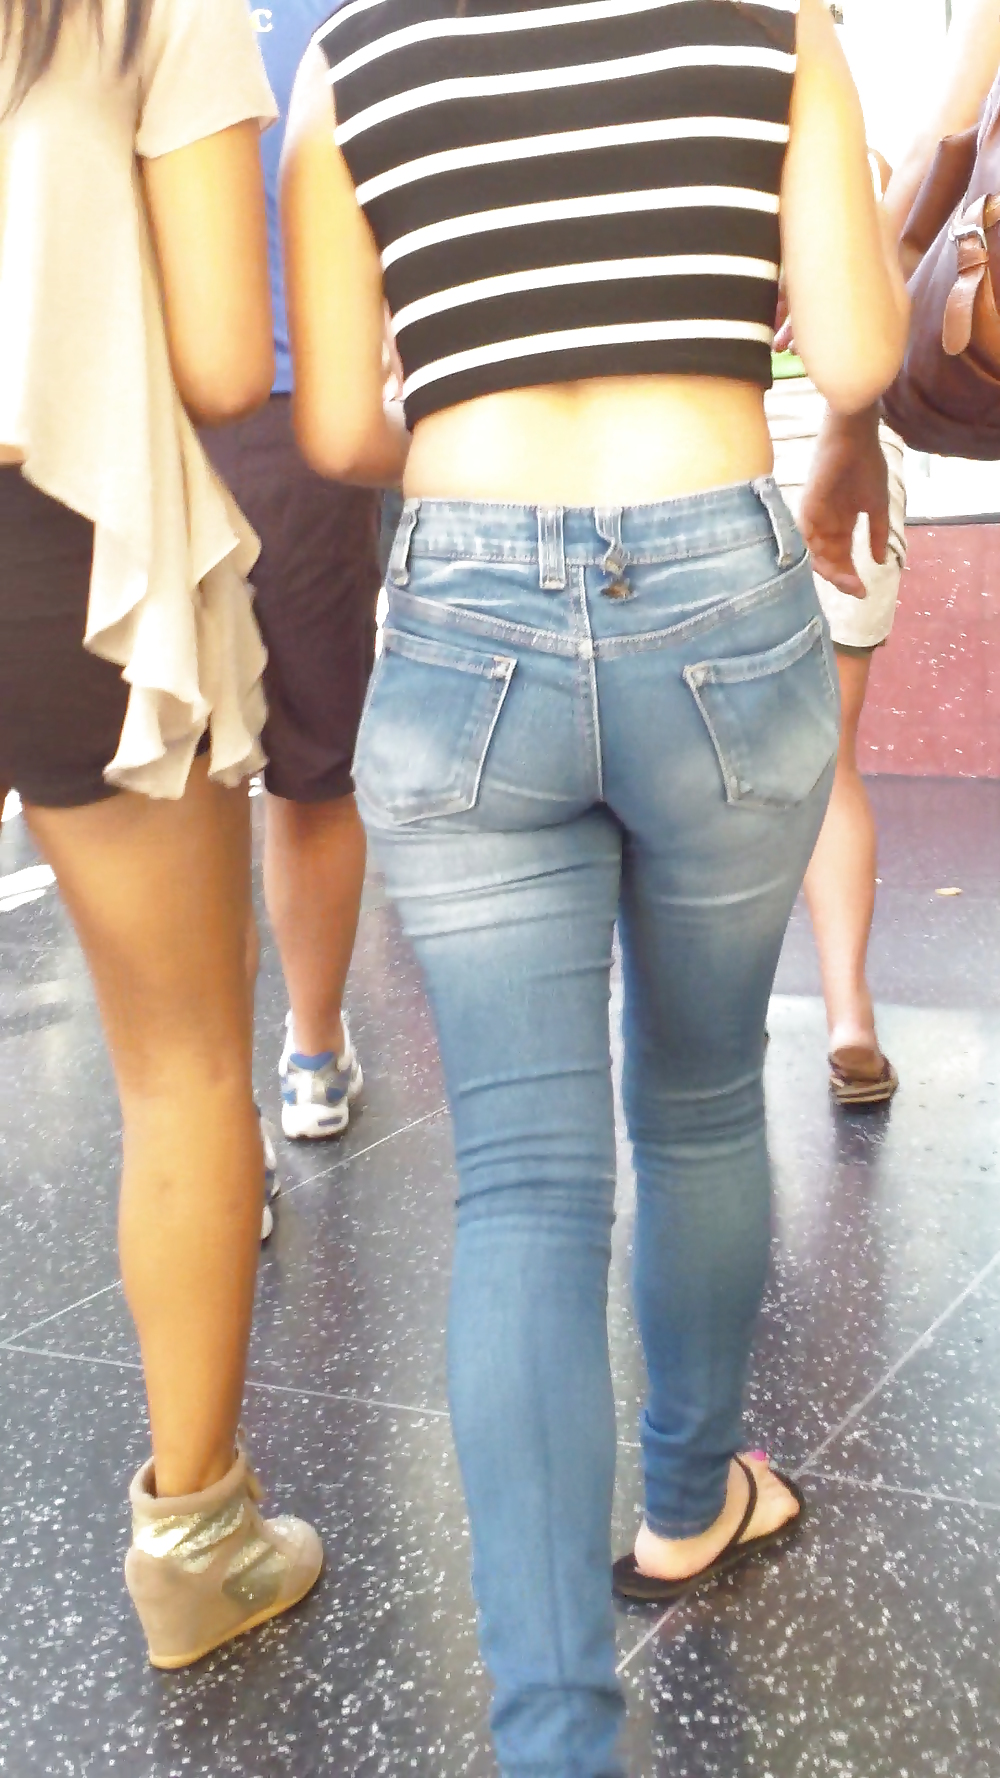 Beautiful cute tight teen ass & butt in blue jeans #21921901